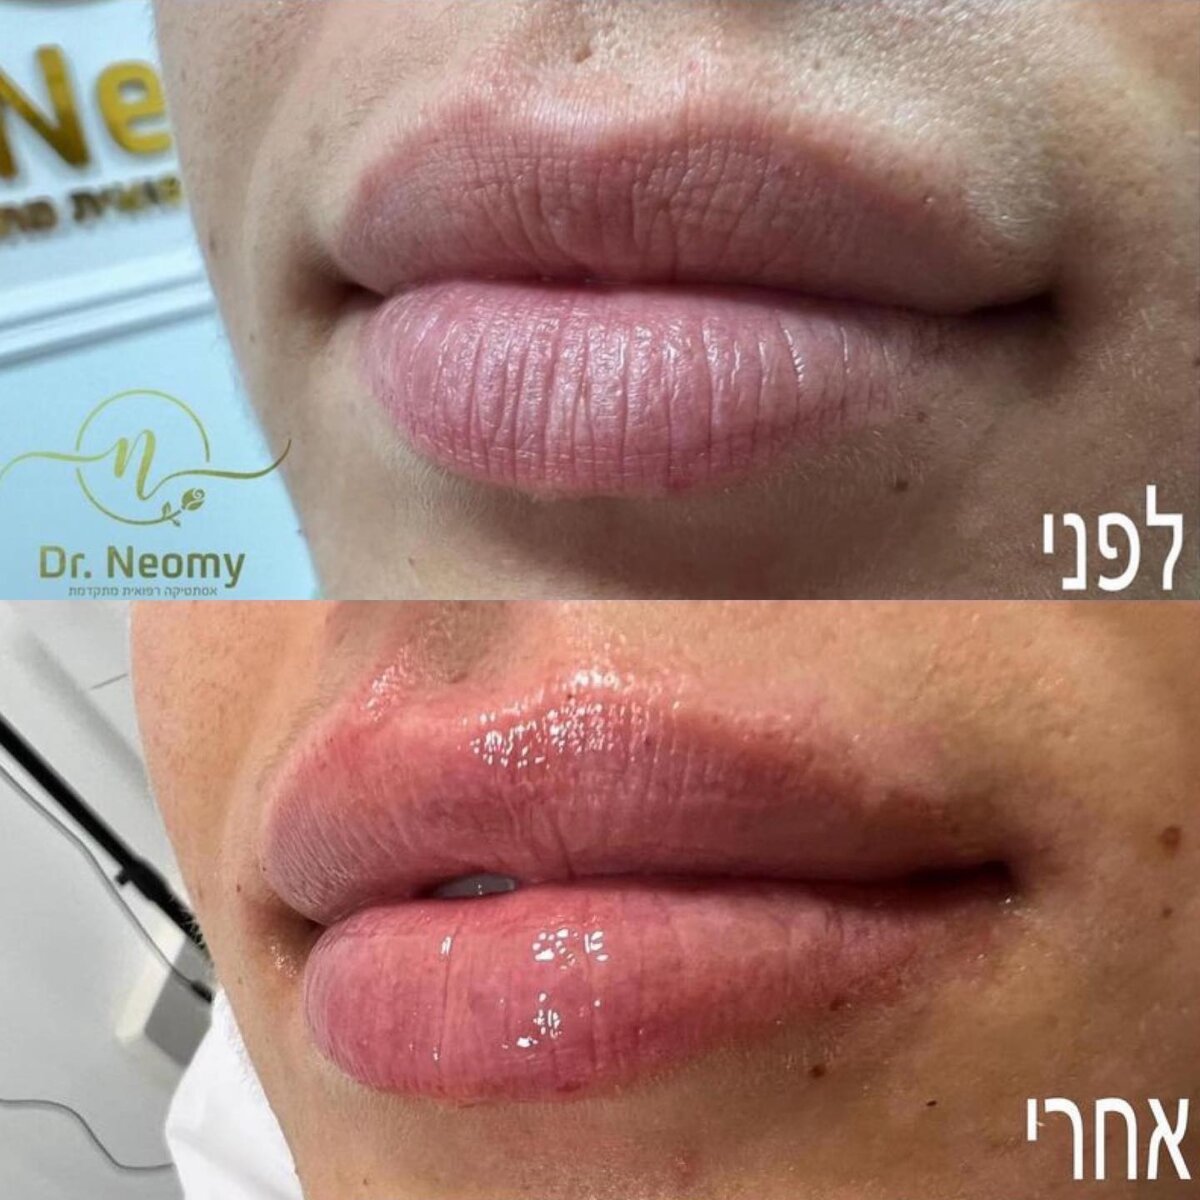 ד"ר נעמי איצקוביץ - עיצוב שפתיים בחומצה היאלורונית